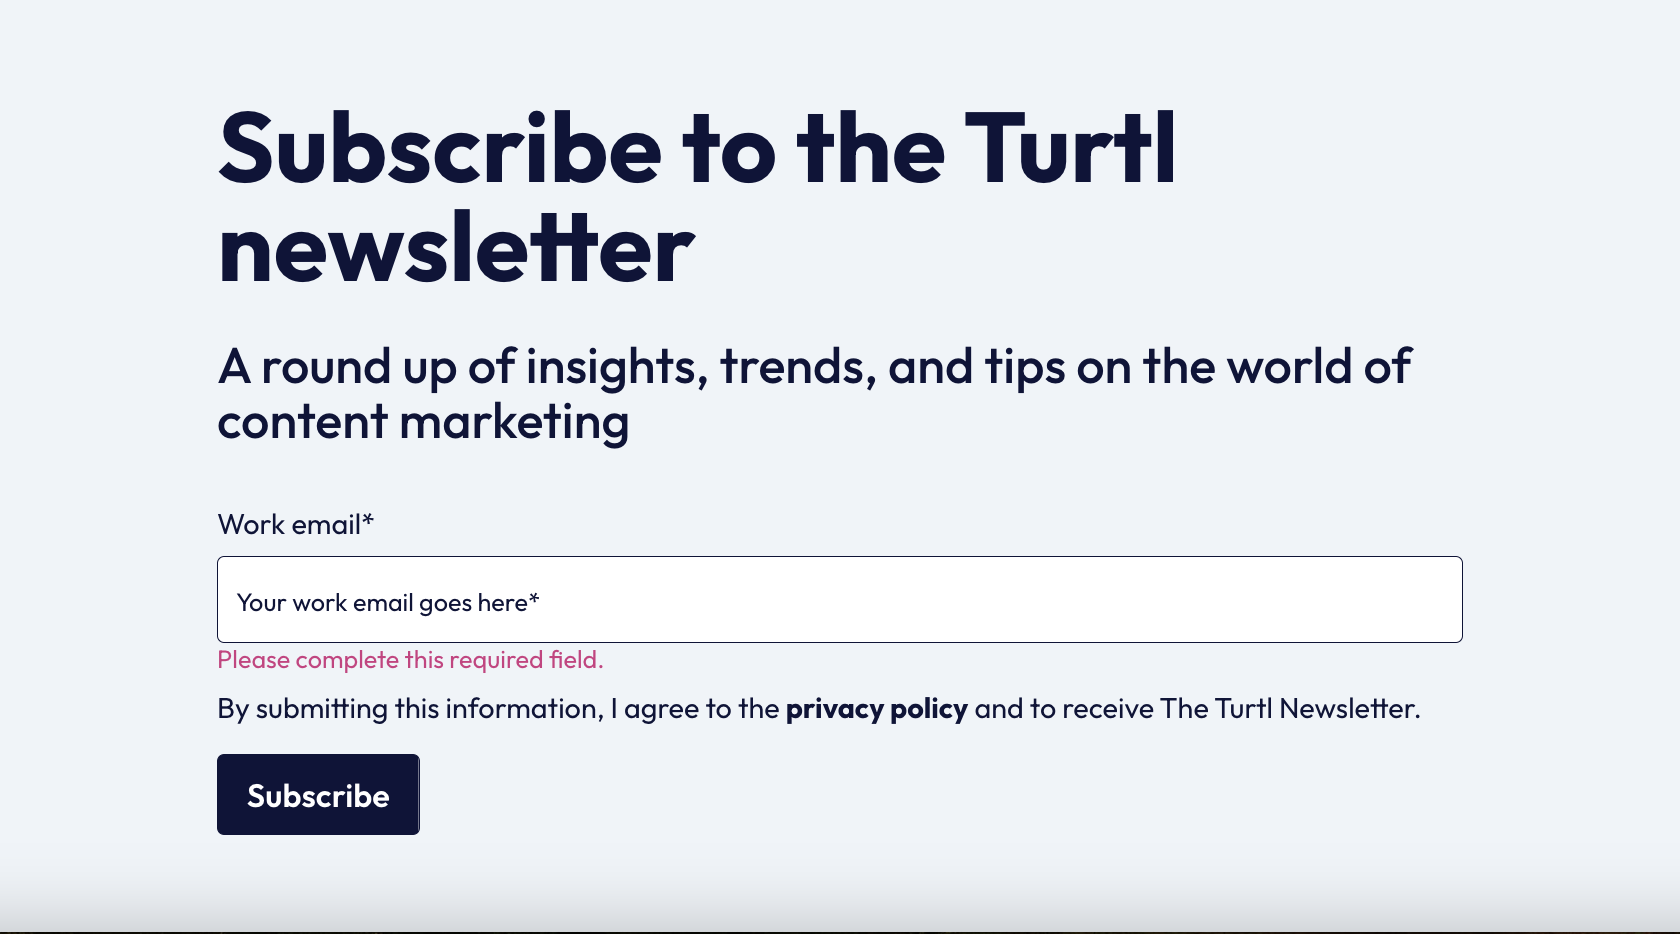 Turtl newsletter sign-up